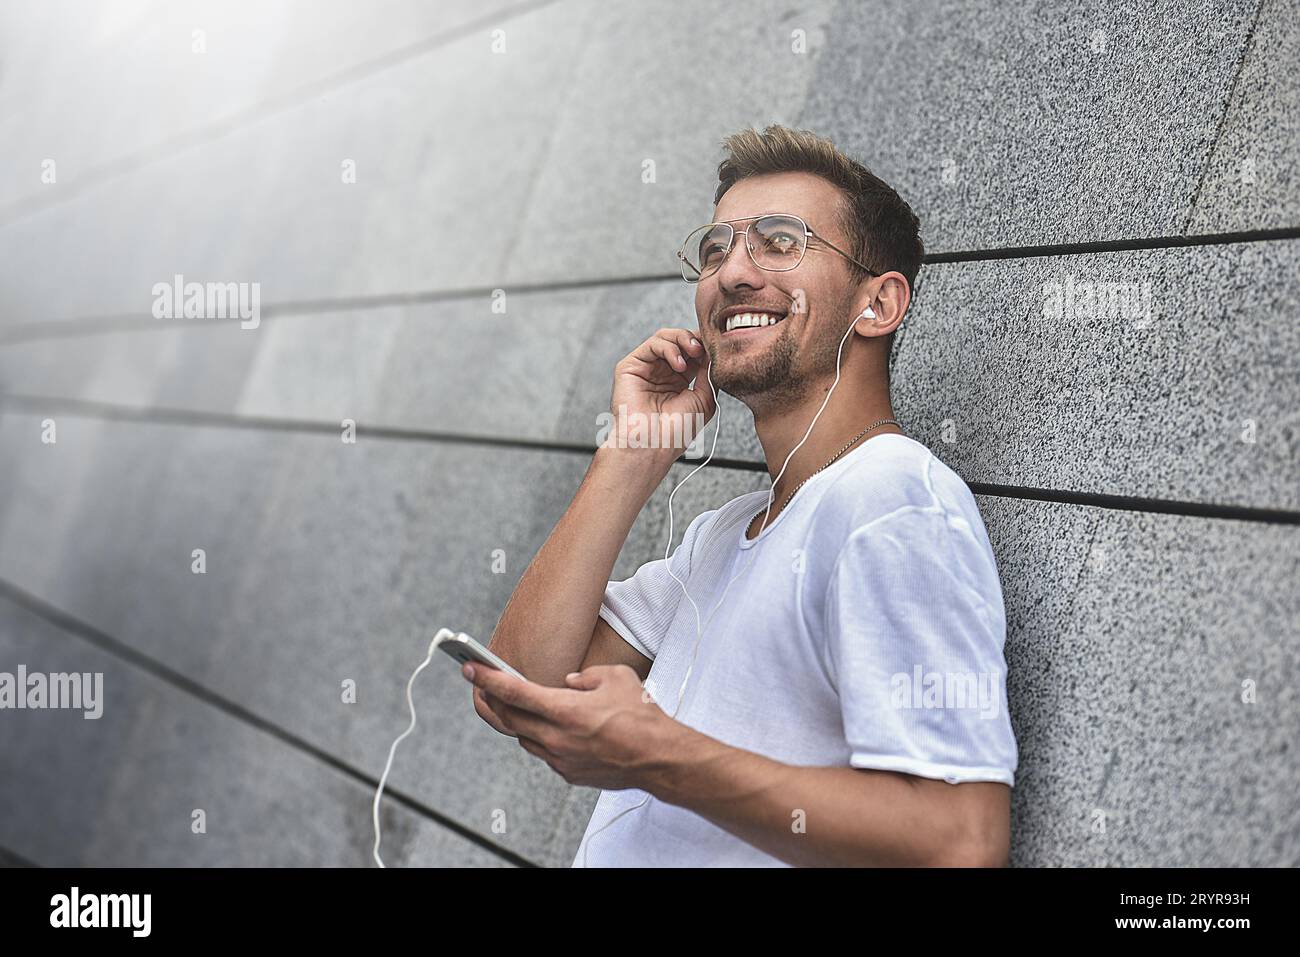 Mec gai habillé en t-shirt blanc dans la rue, écoutant de la musique avec des écouteurs, tenant le téléphone portable. Banque D'Images